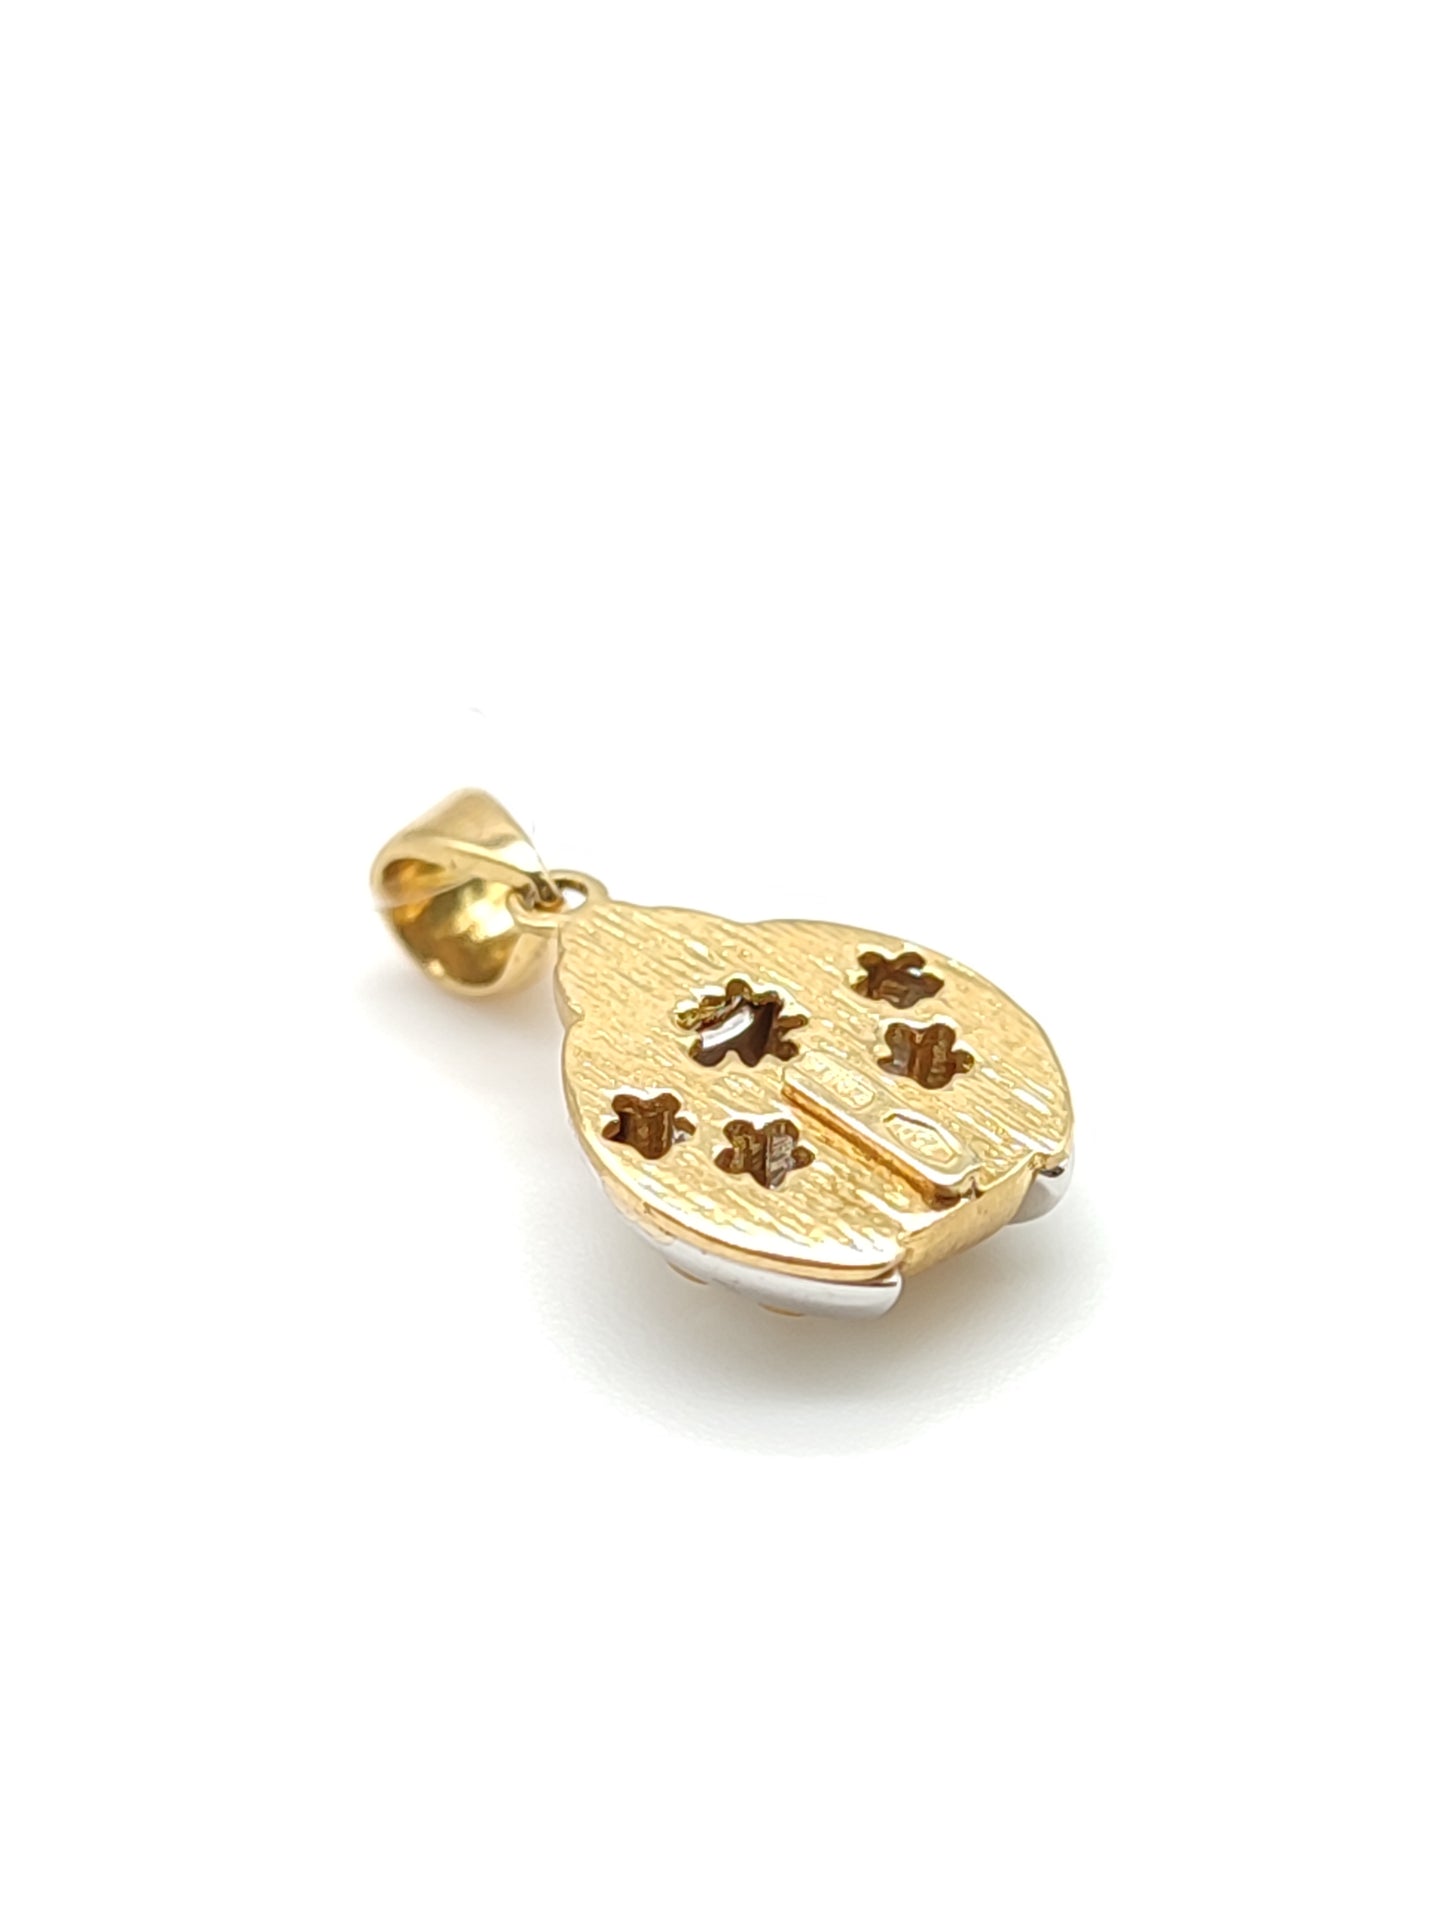 Two-tone ladybug gold pendant